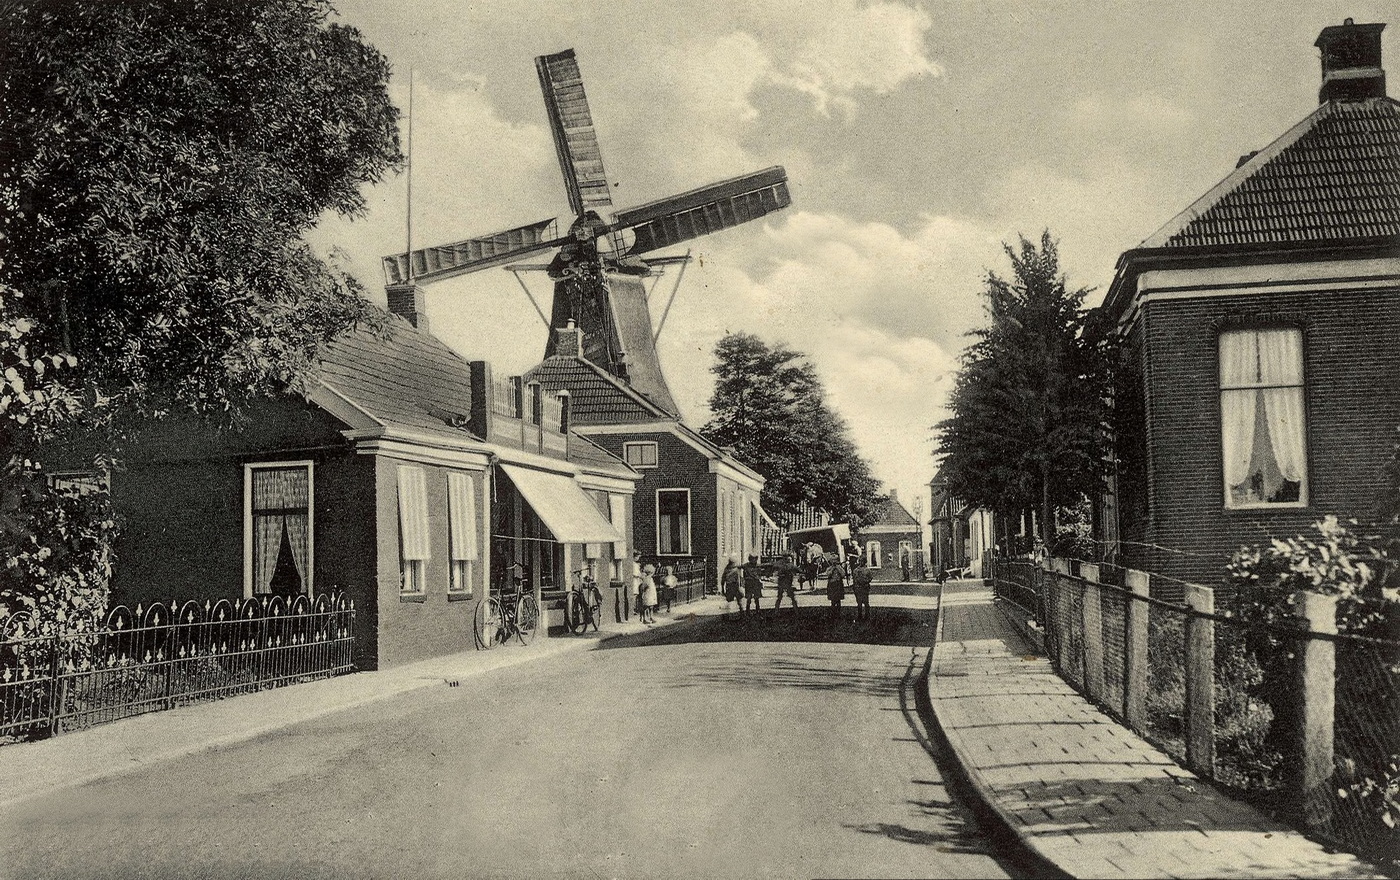 Ansichtkaart. Dorpsgezicht met molen. Uitgever: Huizinga & Bult. Foto: 1935-1940. Bron: RHC GA, Beeldbank Groningen.